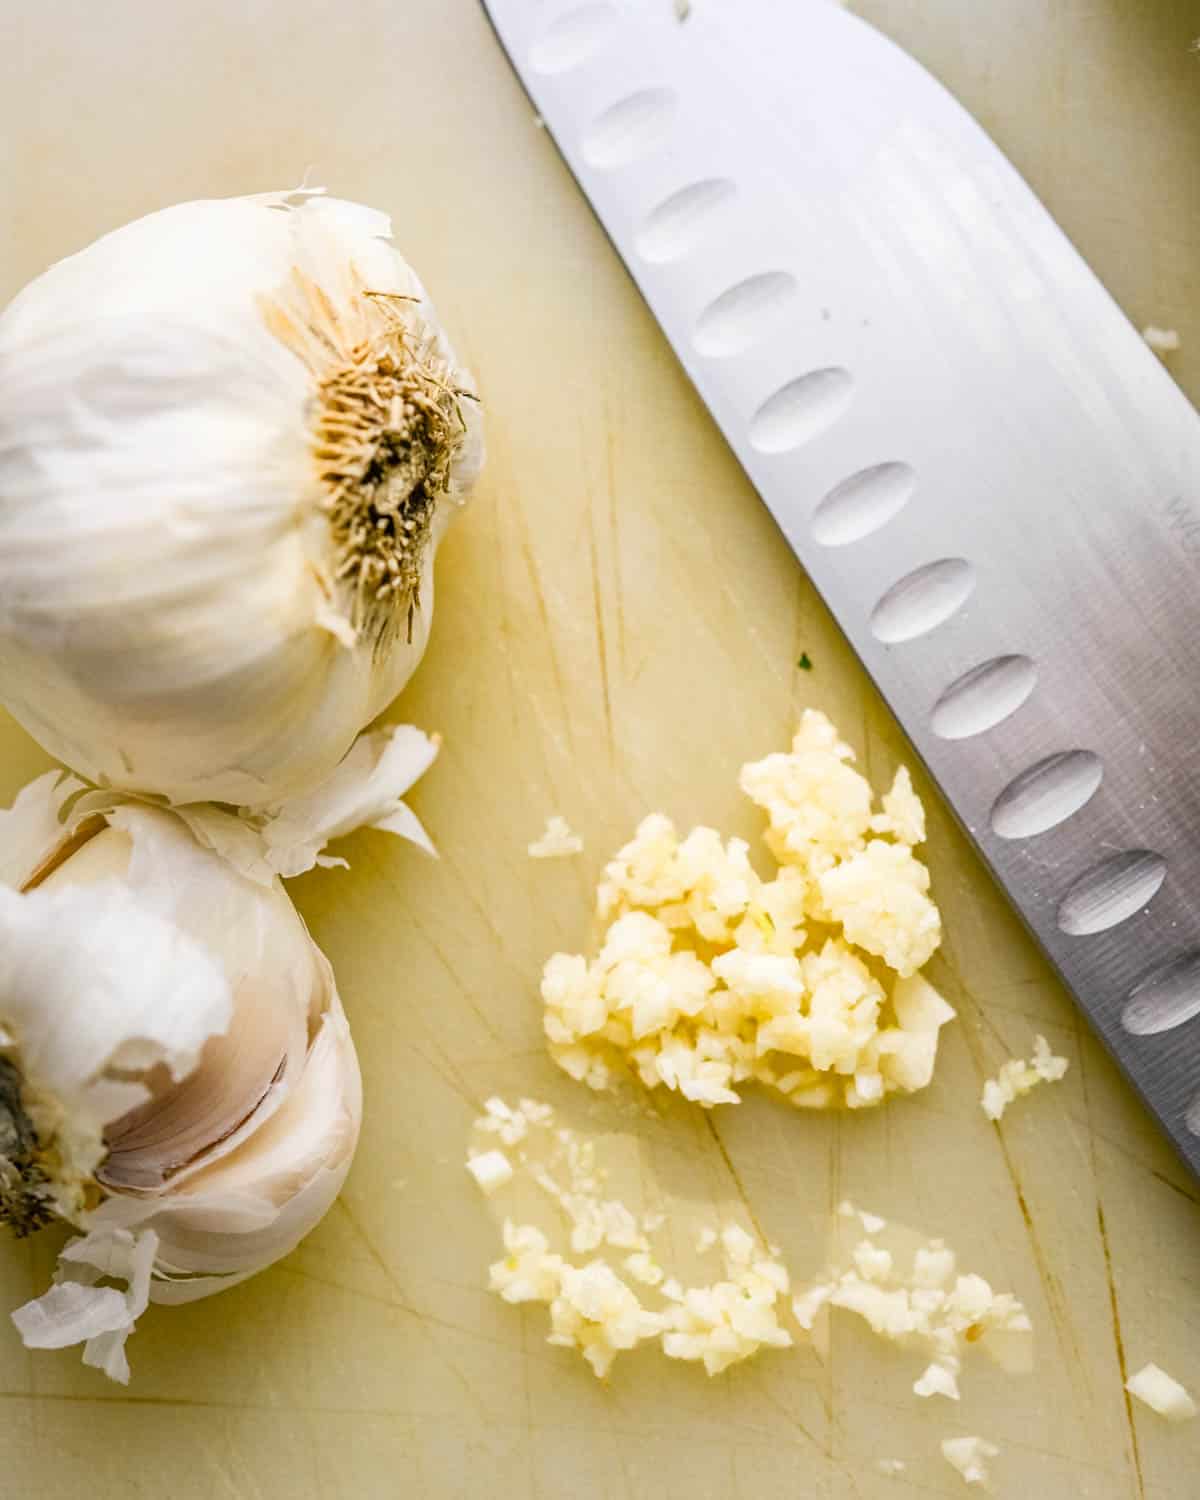 Chopping garlic on a cutting board. 